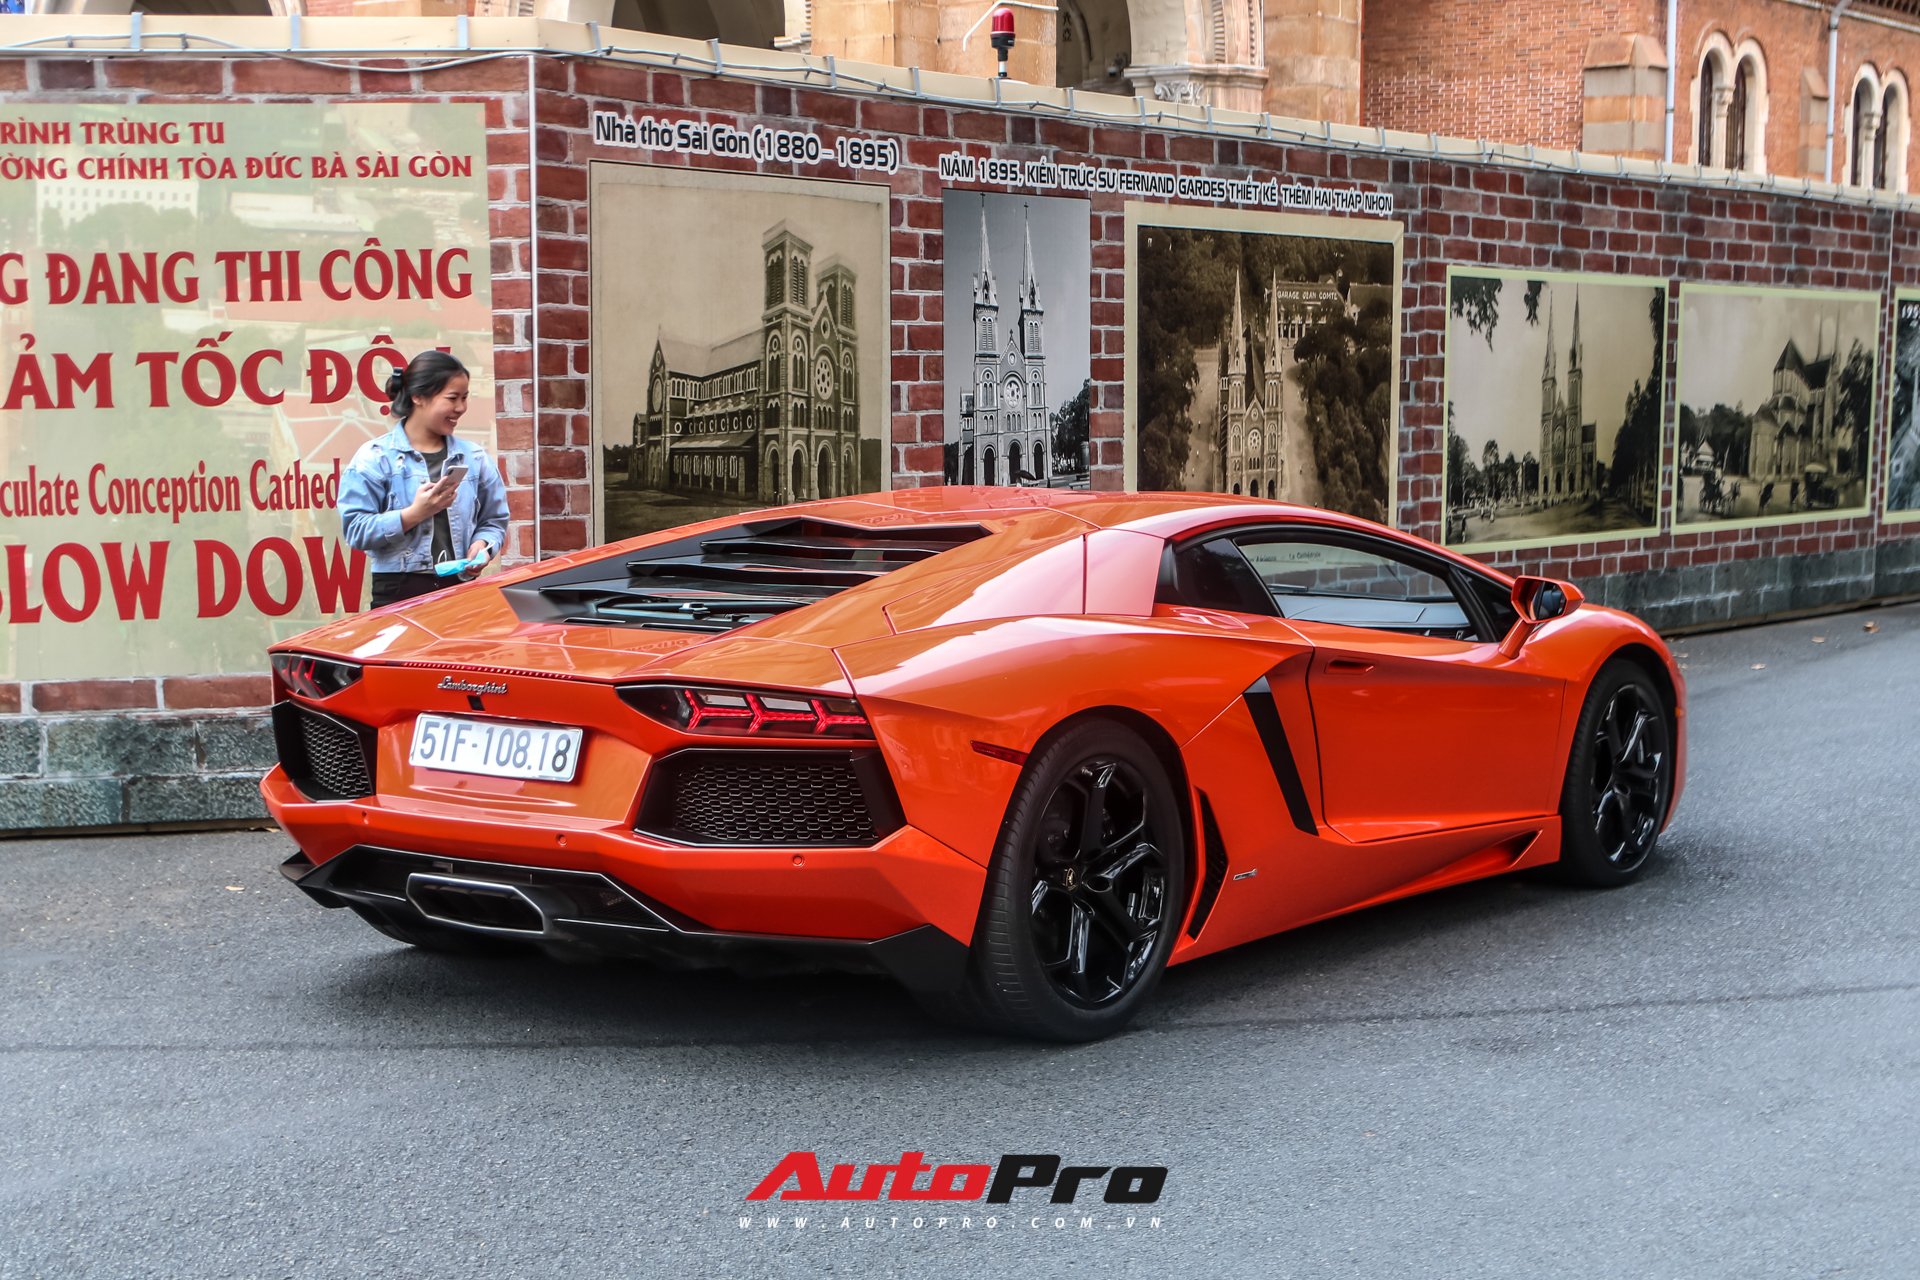 Doanh nhân Cao Hoài Trung cầm lái Lamborghini Aventador dạo phố ngày đầu năm mới - Ảnh 3.